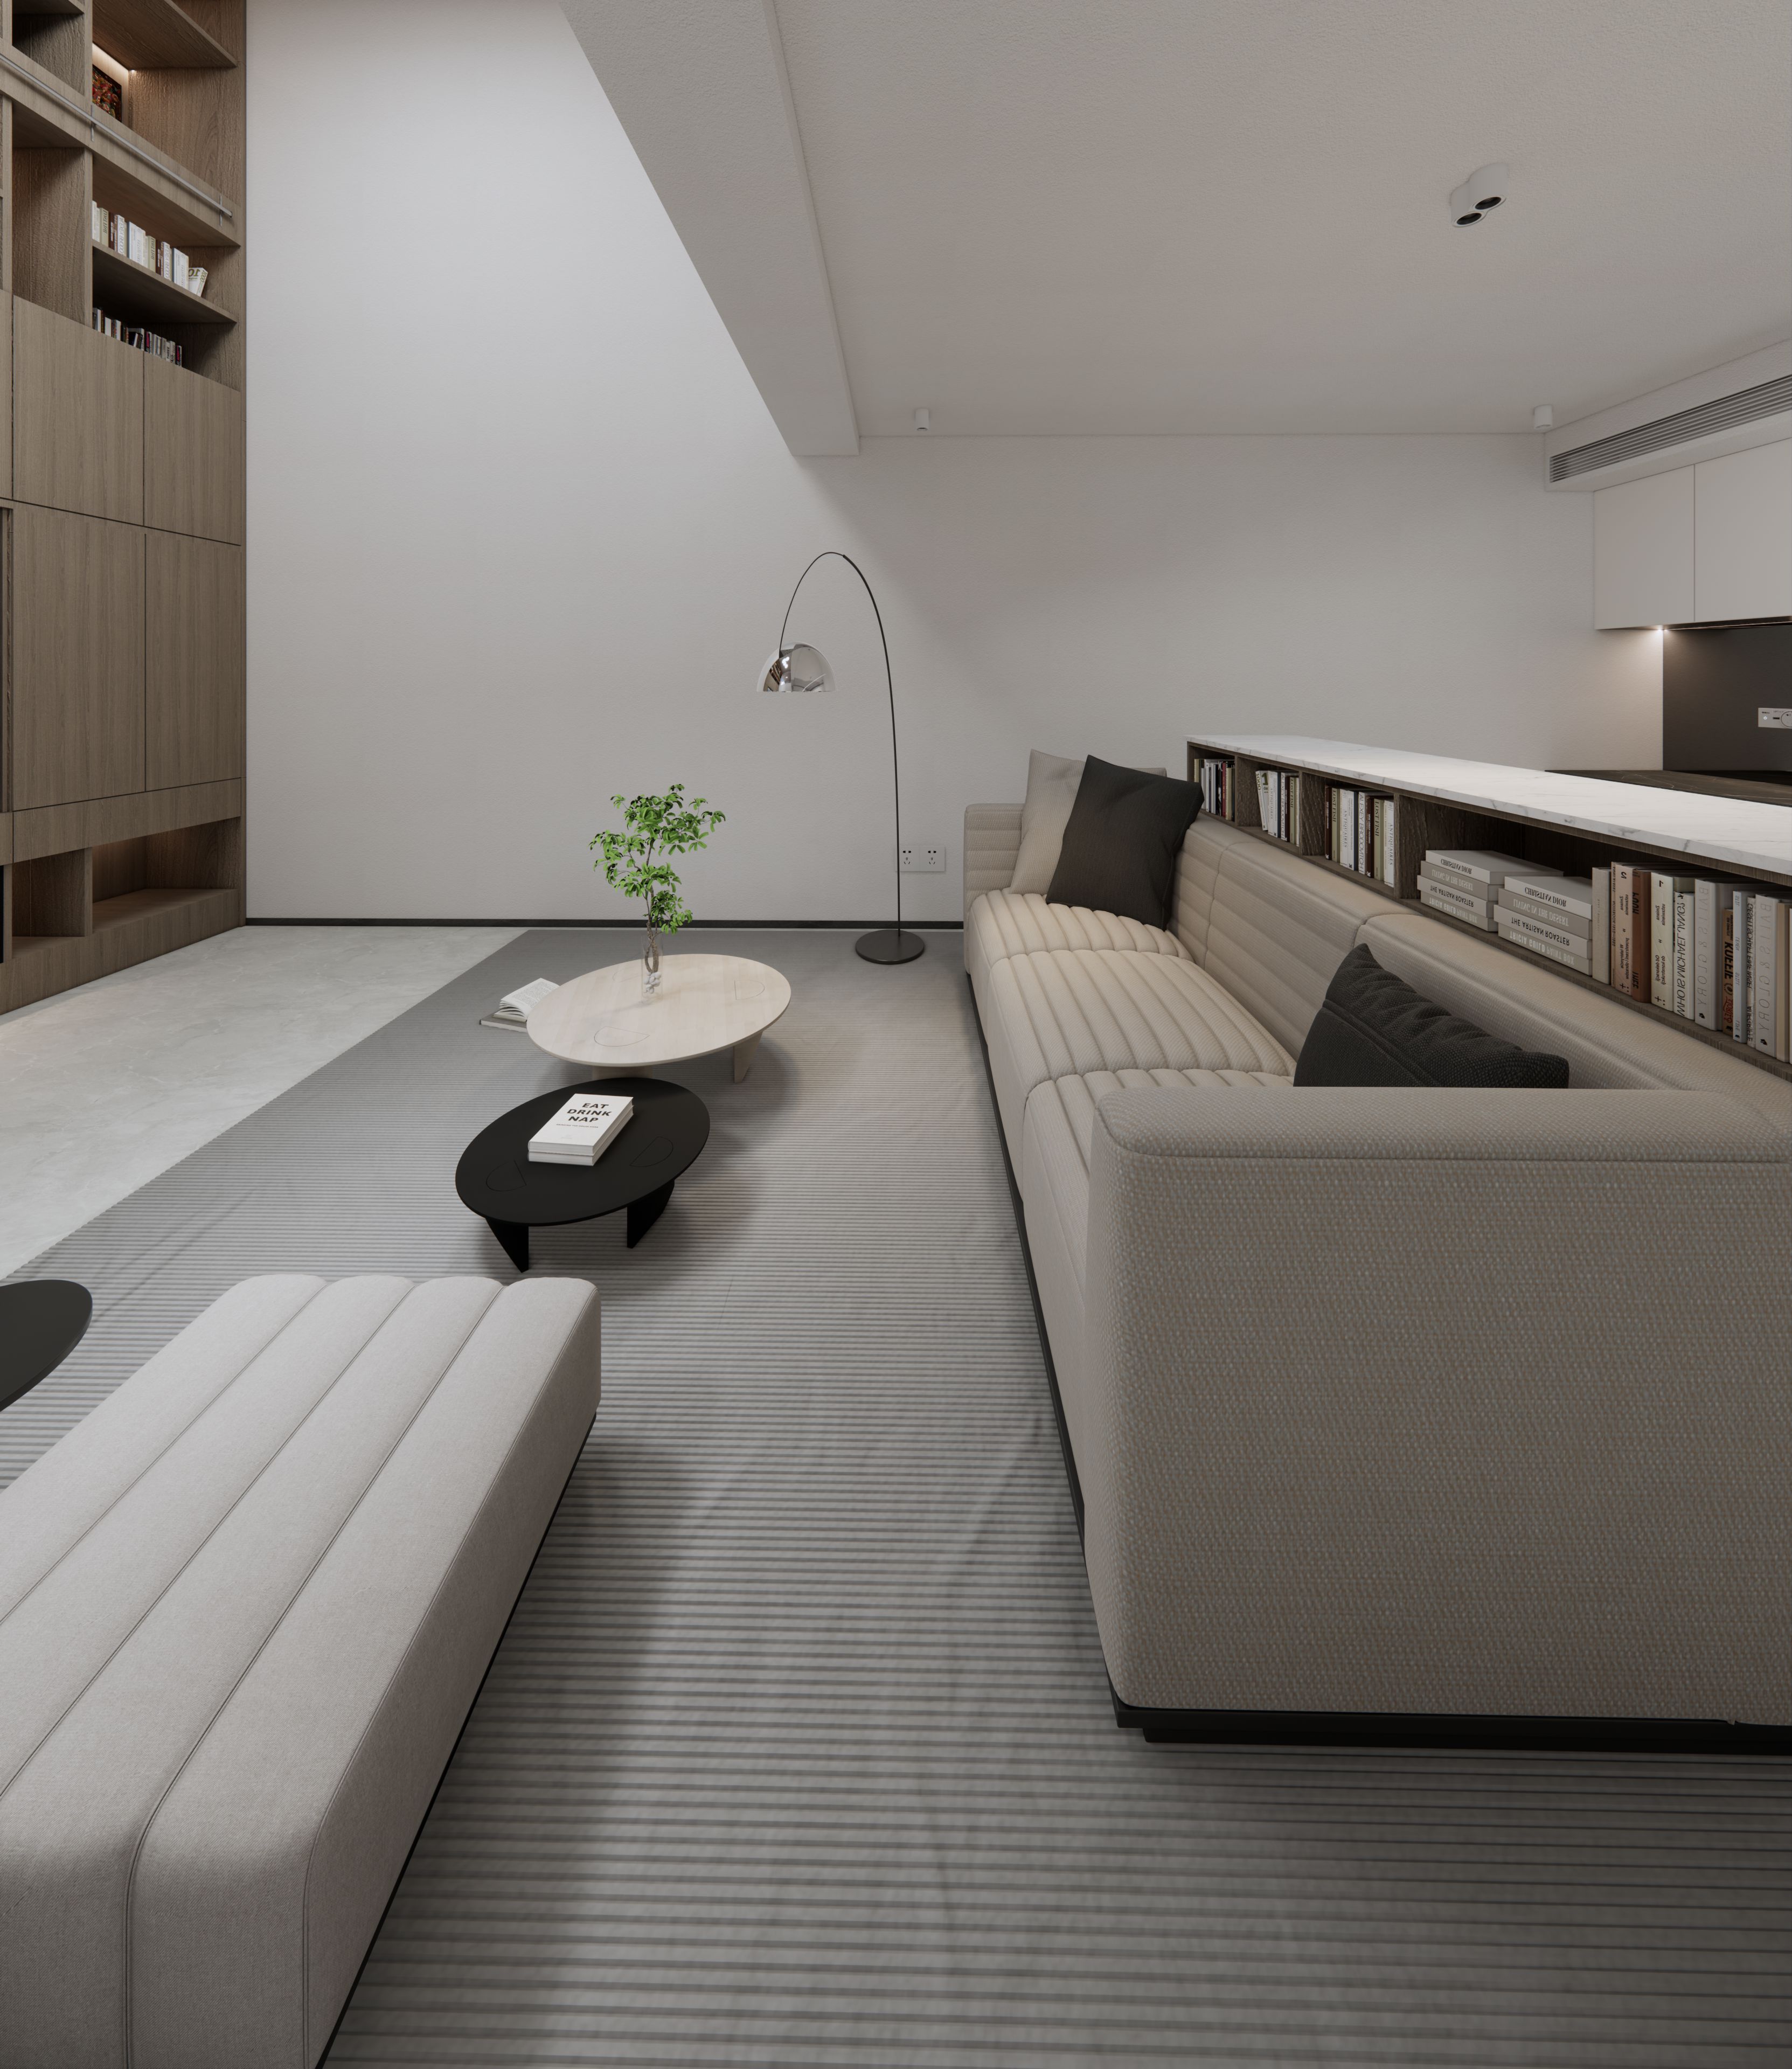 张家港简美大平层装修图欣赏打造别具风格的现代家居空间